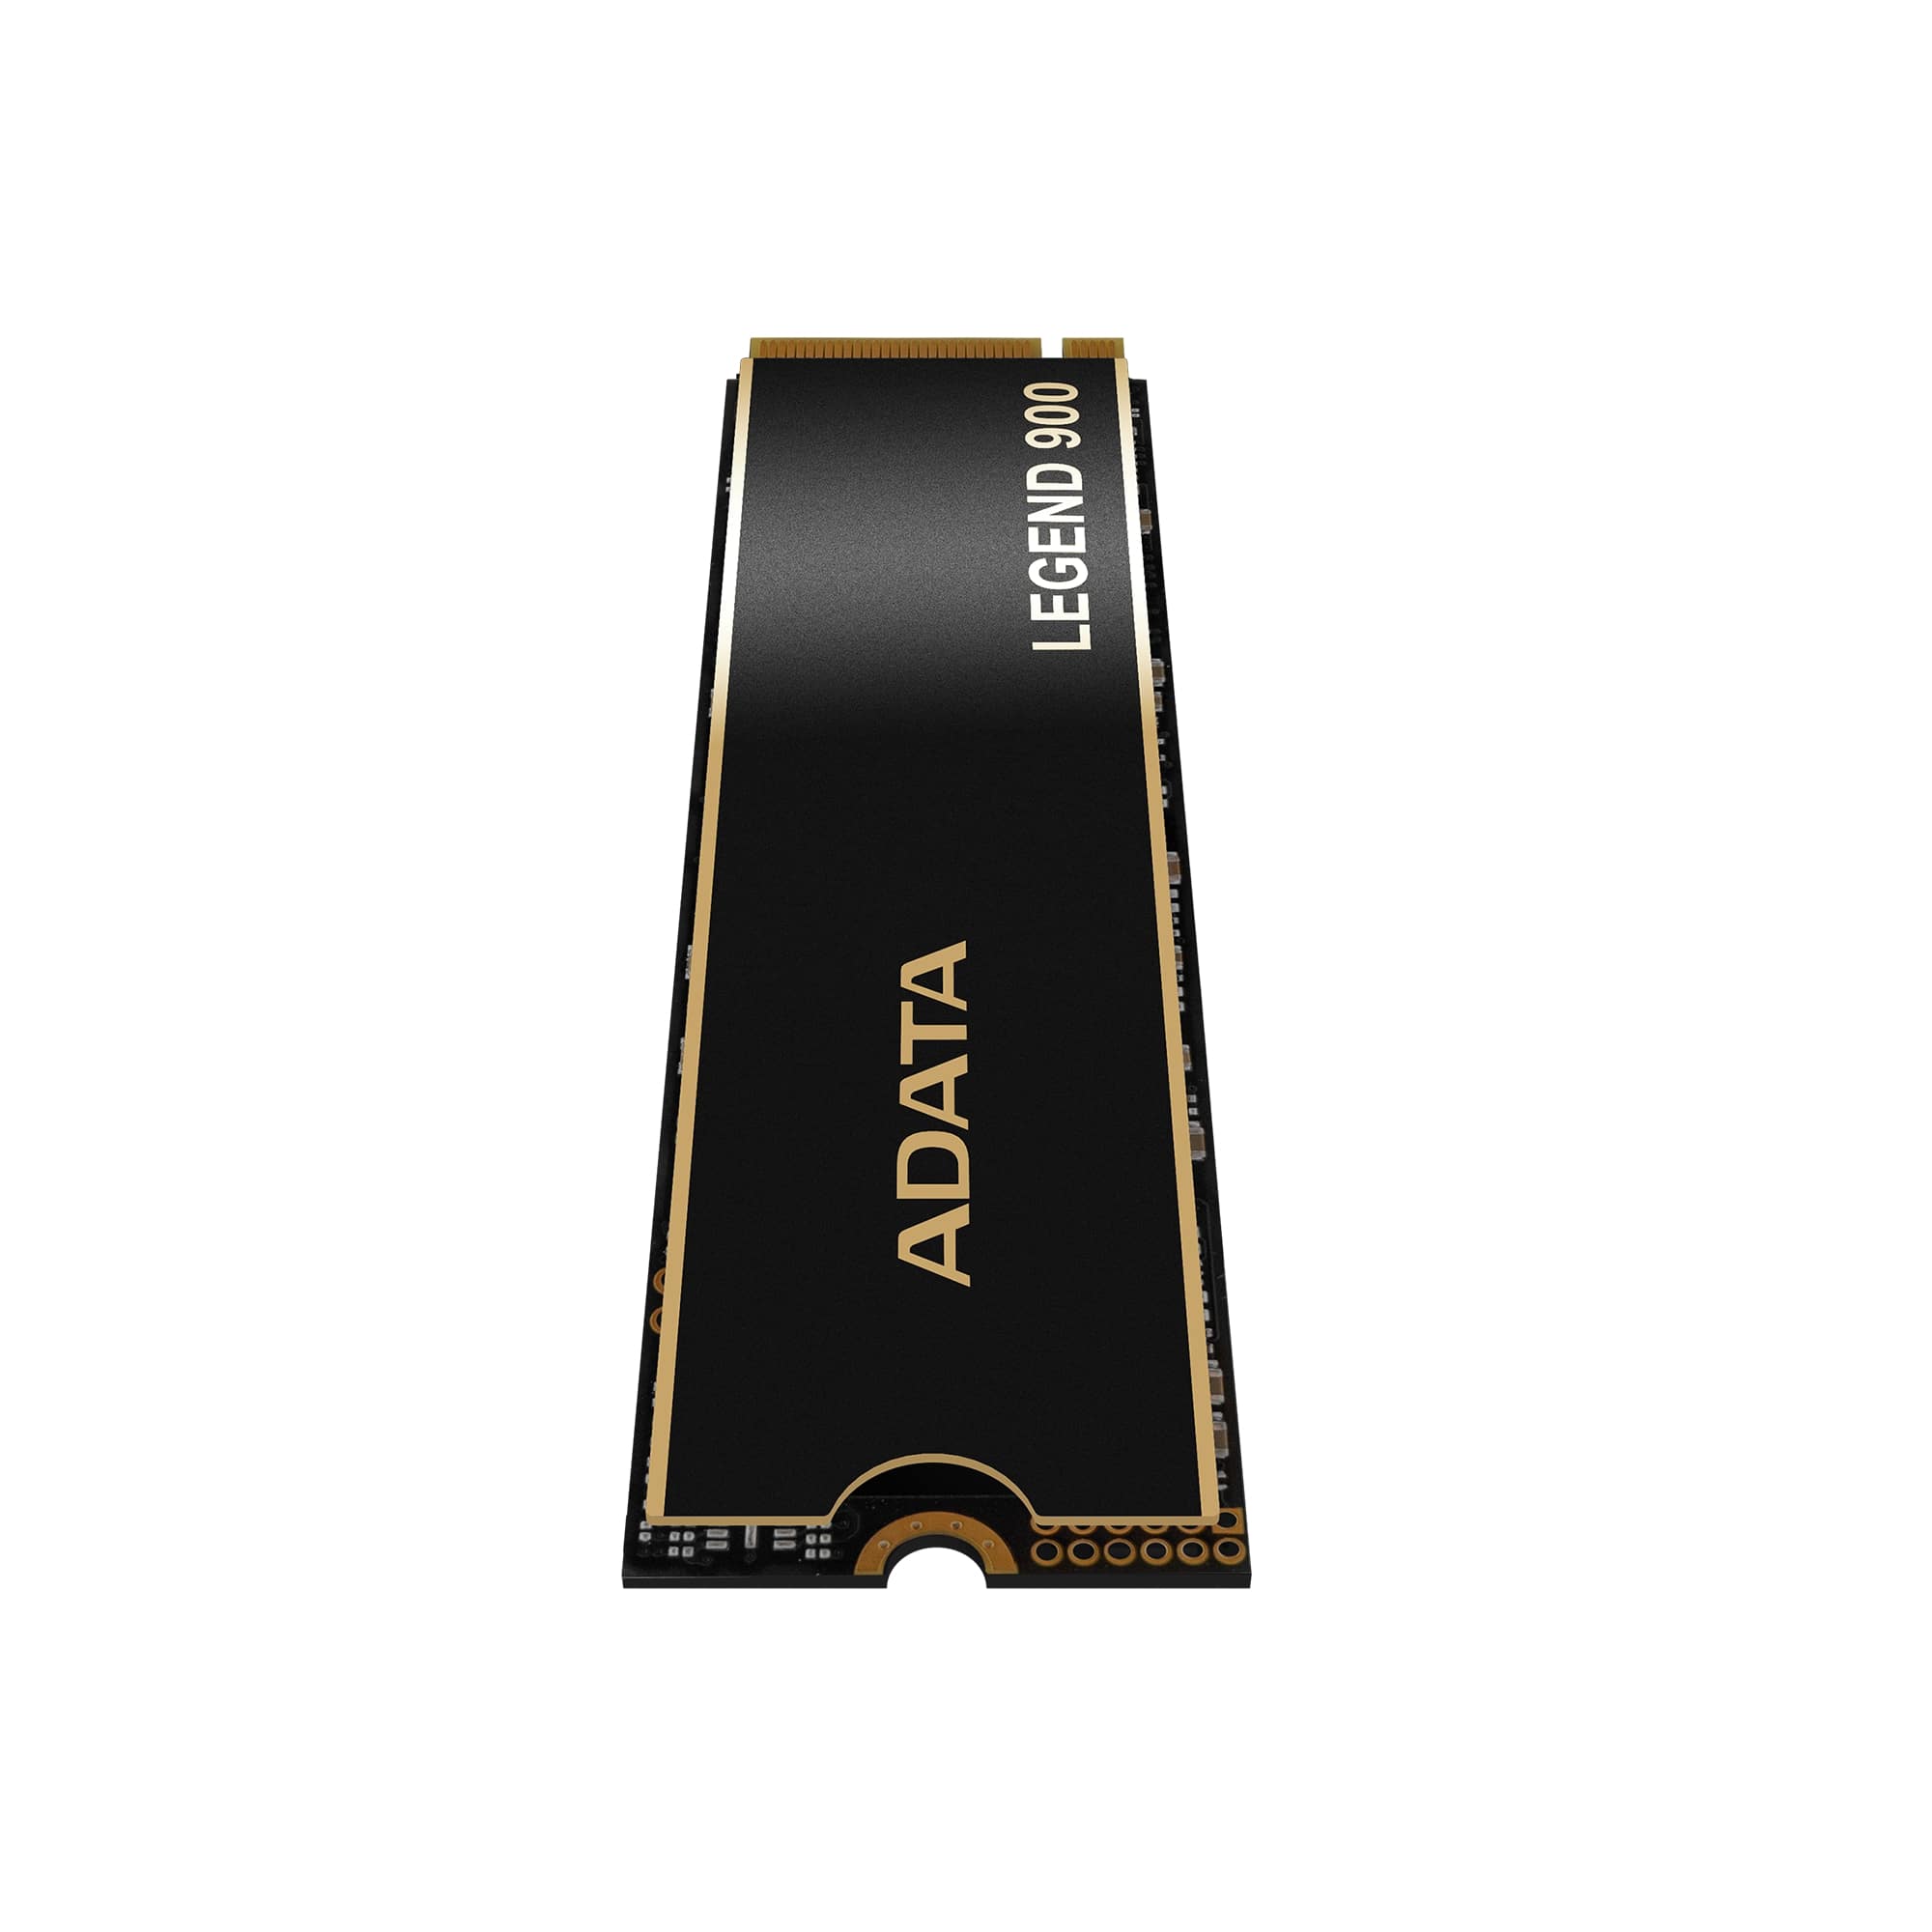 ADATA LEGEND 900/ 2TB/ SSD/ M.2 NVMe/ Čierna/ Heatsink/ 5R 